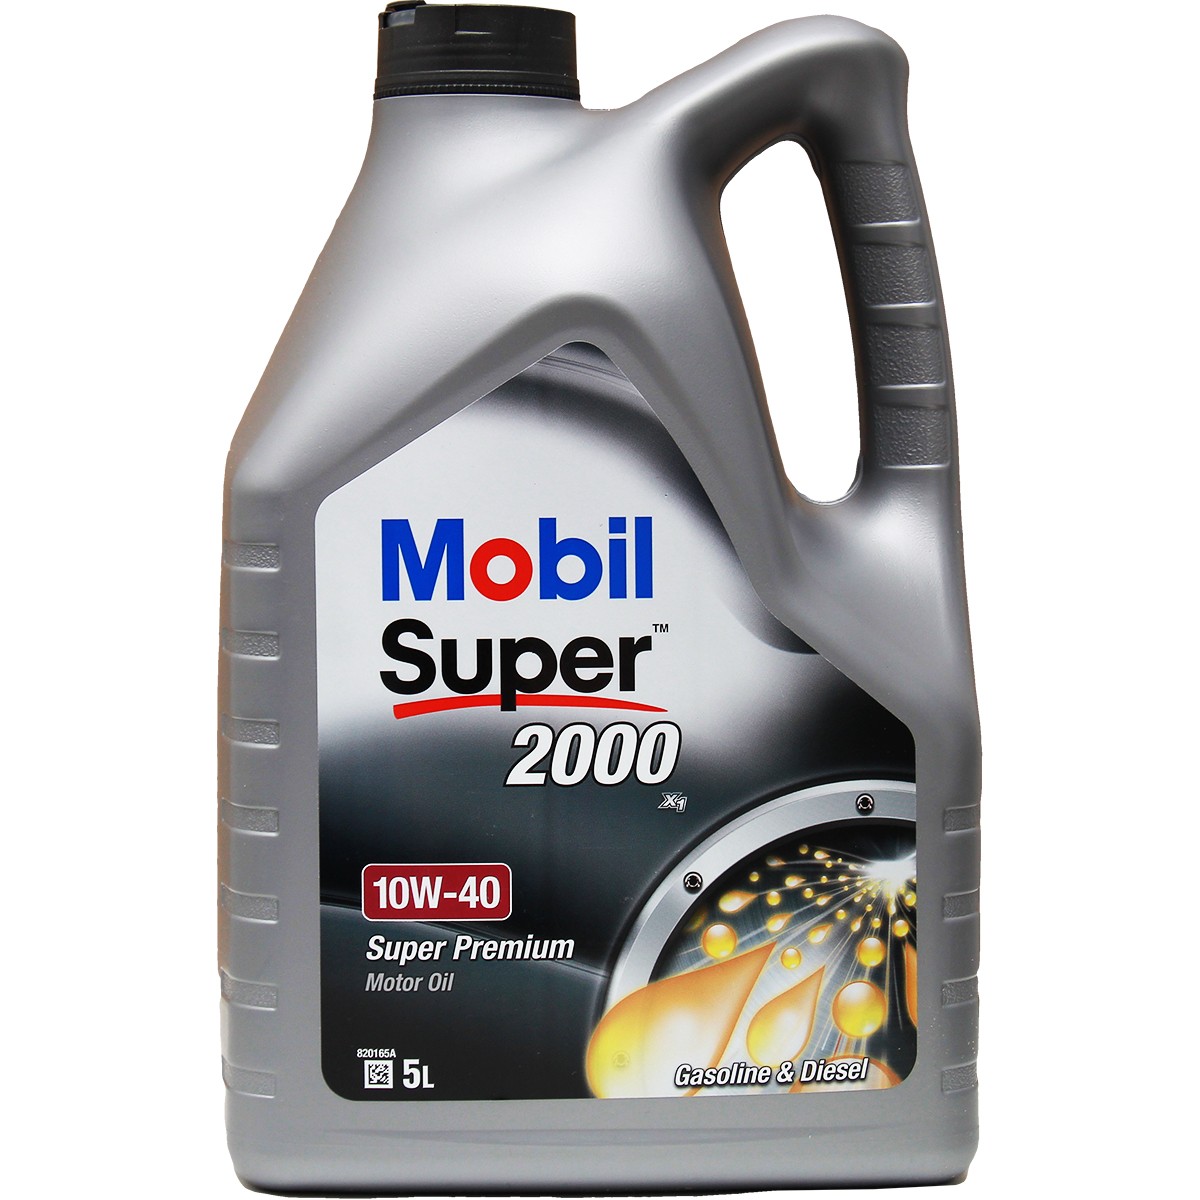 MOBIL Super, 2000 X1 150563 Moottoriöljy 10W-40, 5l, Osasynteettinen öljy